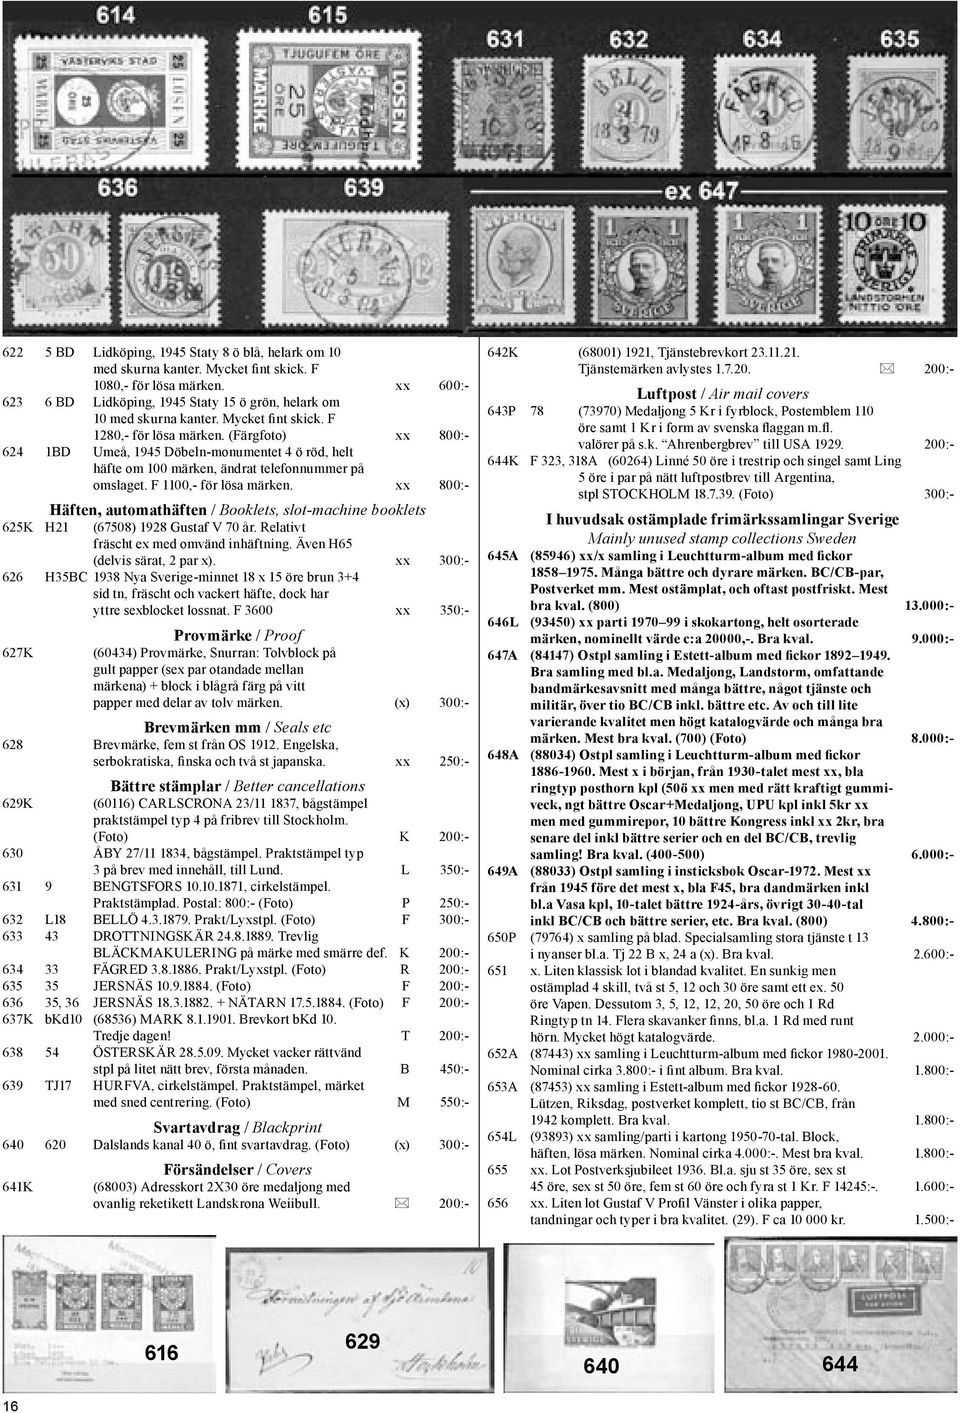 xx 800:- Häften, automathäften / Booklets, slot-machine booklets 625K H21 (67508) 1928 Gustaf V 70 år. Relativt fräscht ex med omvänd inhäftning. Även H65 (delvis särat, 2 par x).